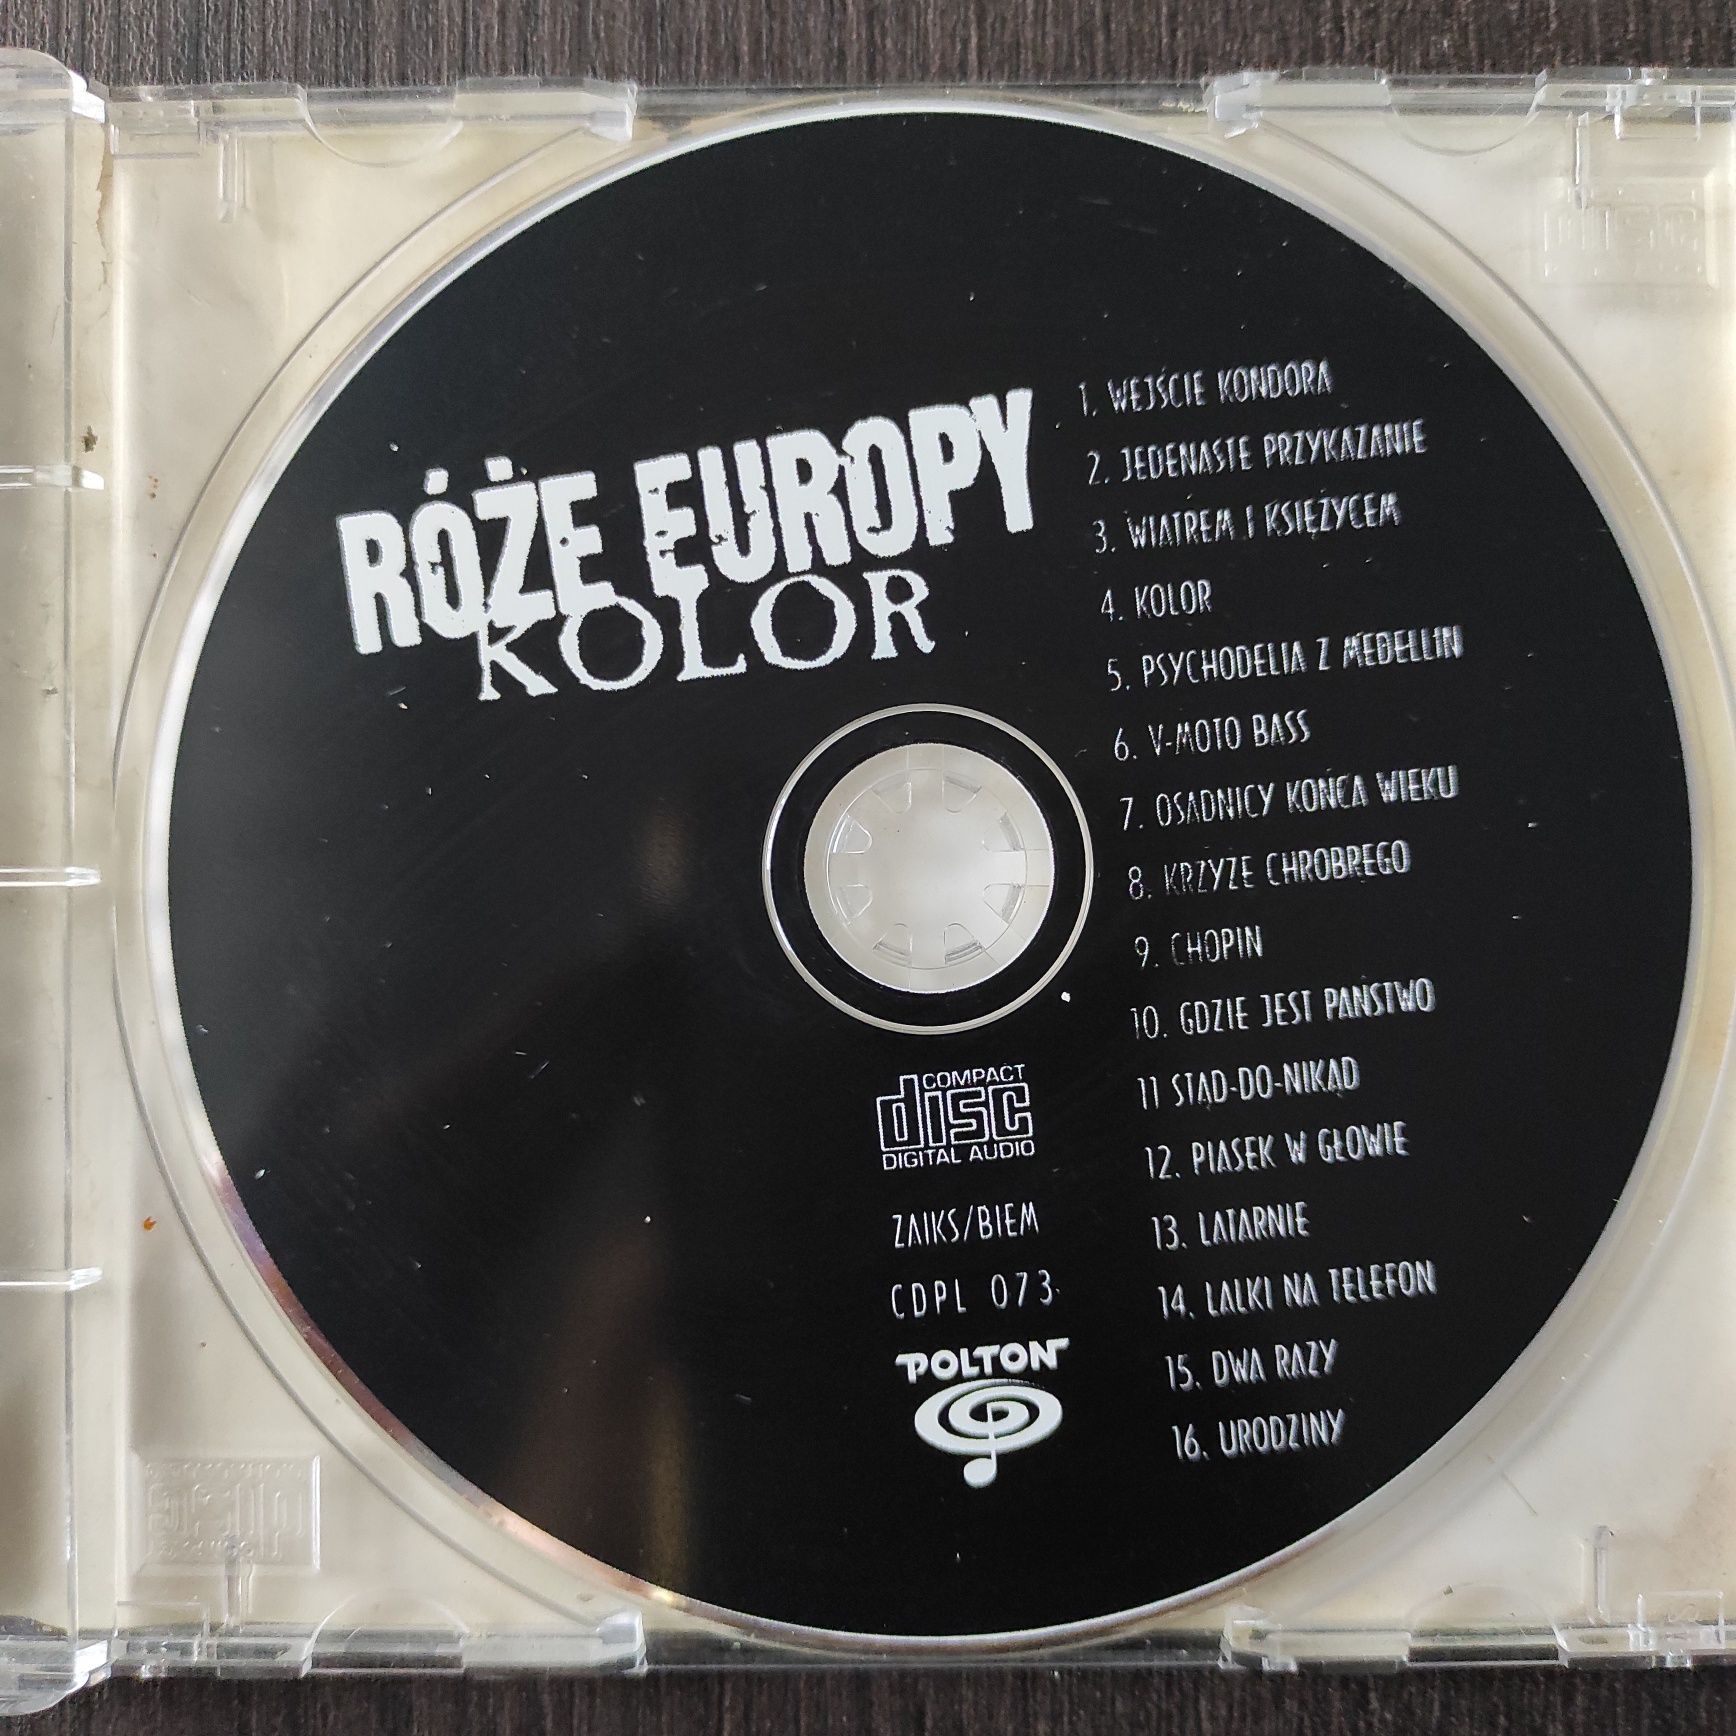 Róże Europy Kolor Polton pierwsze wydanie 1994 r.